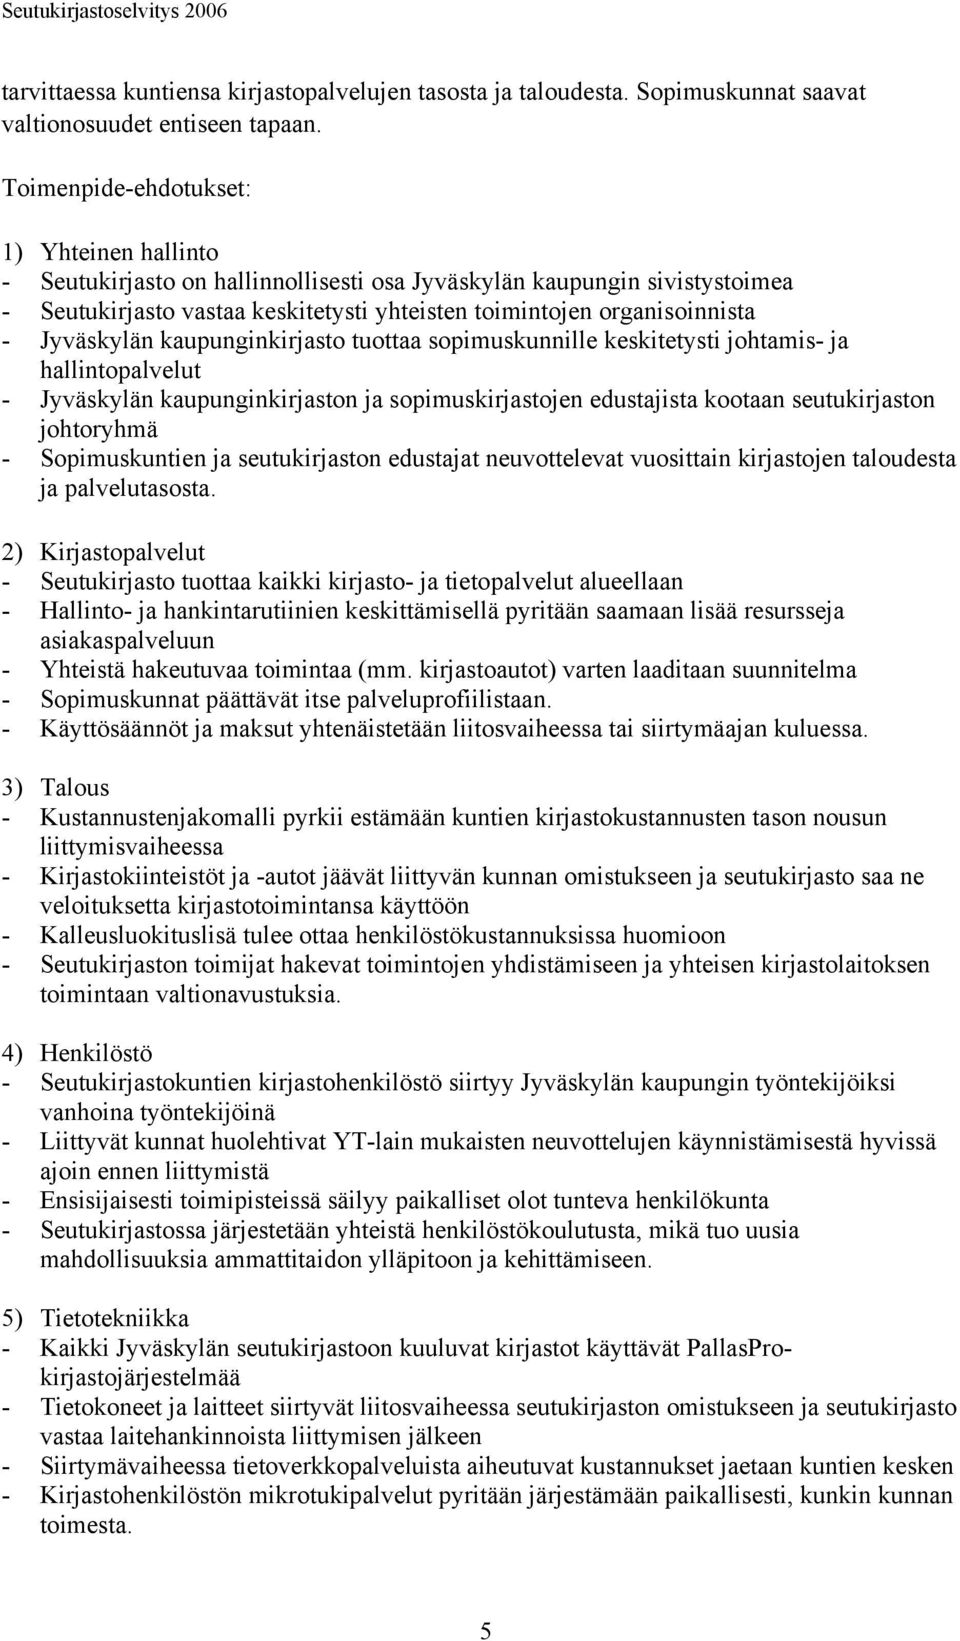 Jyväskylän kaupunginkirjasto tuottaa sopimuskunnille keskitetysti johtamis- ja hallintopalvelut - Jyväskylän kaupunginkirjaston ja sopimuskirjastojen edustajista kootaan seutukirjaston johtoryhmä -